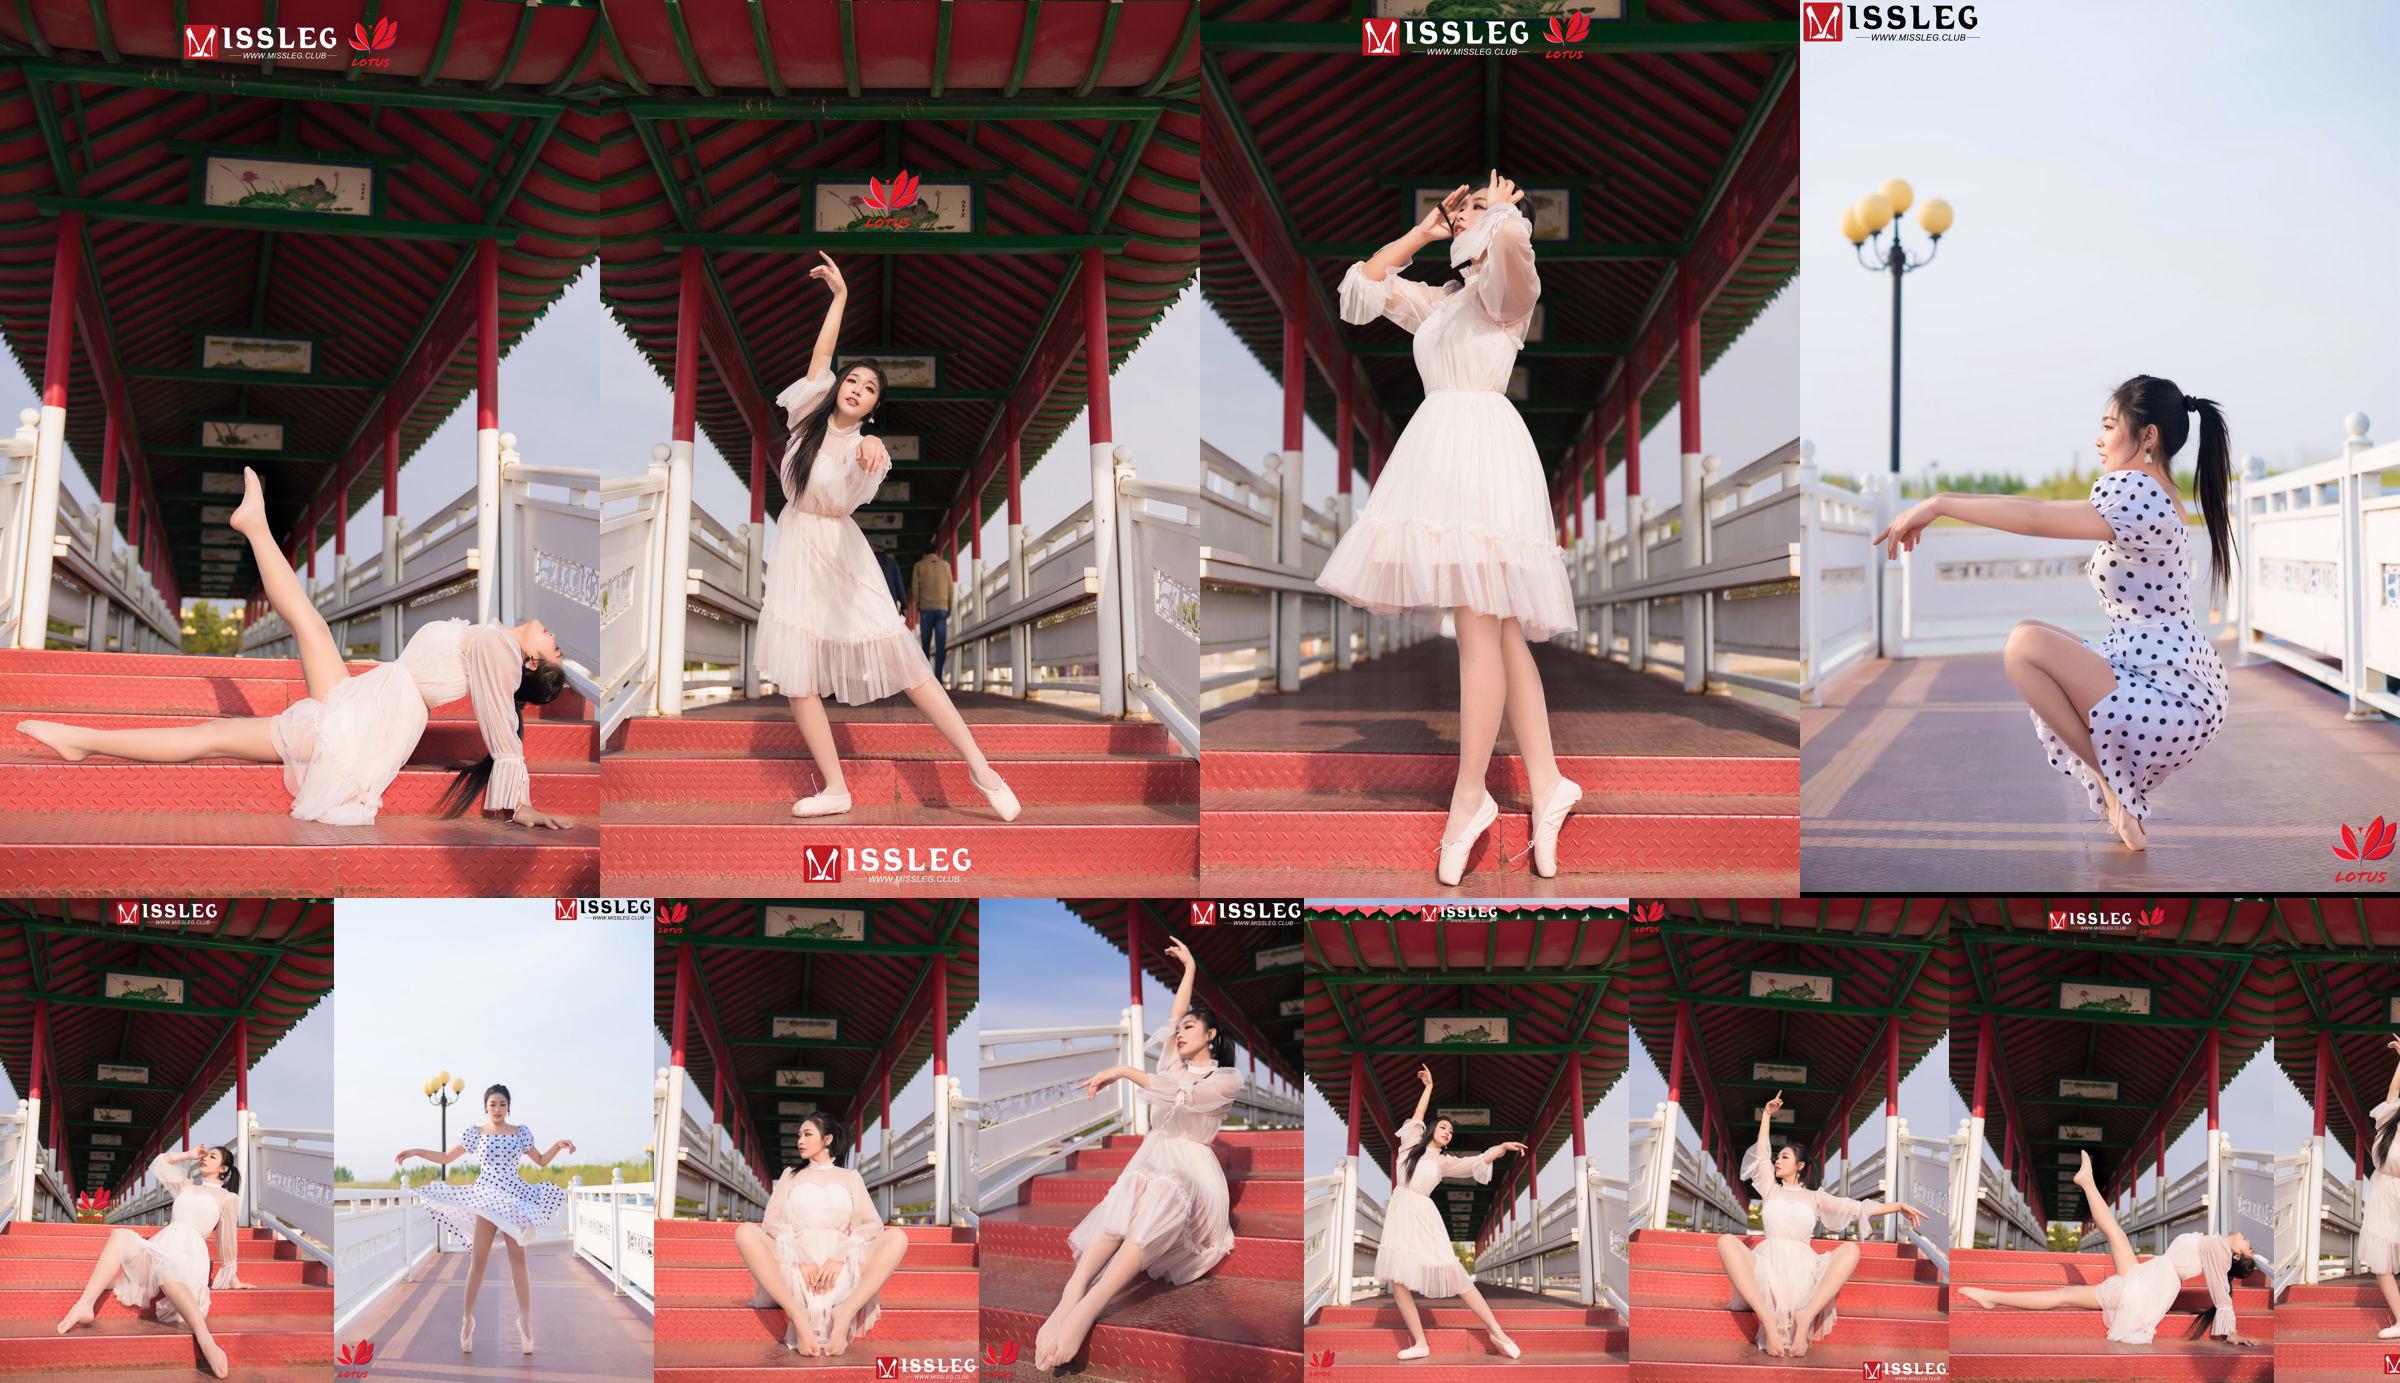 [蜜丝MISSLEG] M018 Imp 3 "Scenic Dancer" No.71679a Page 1